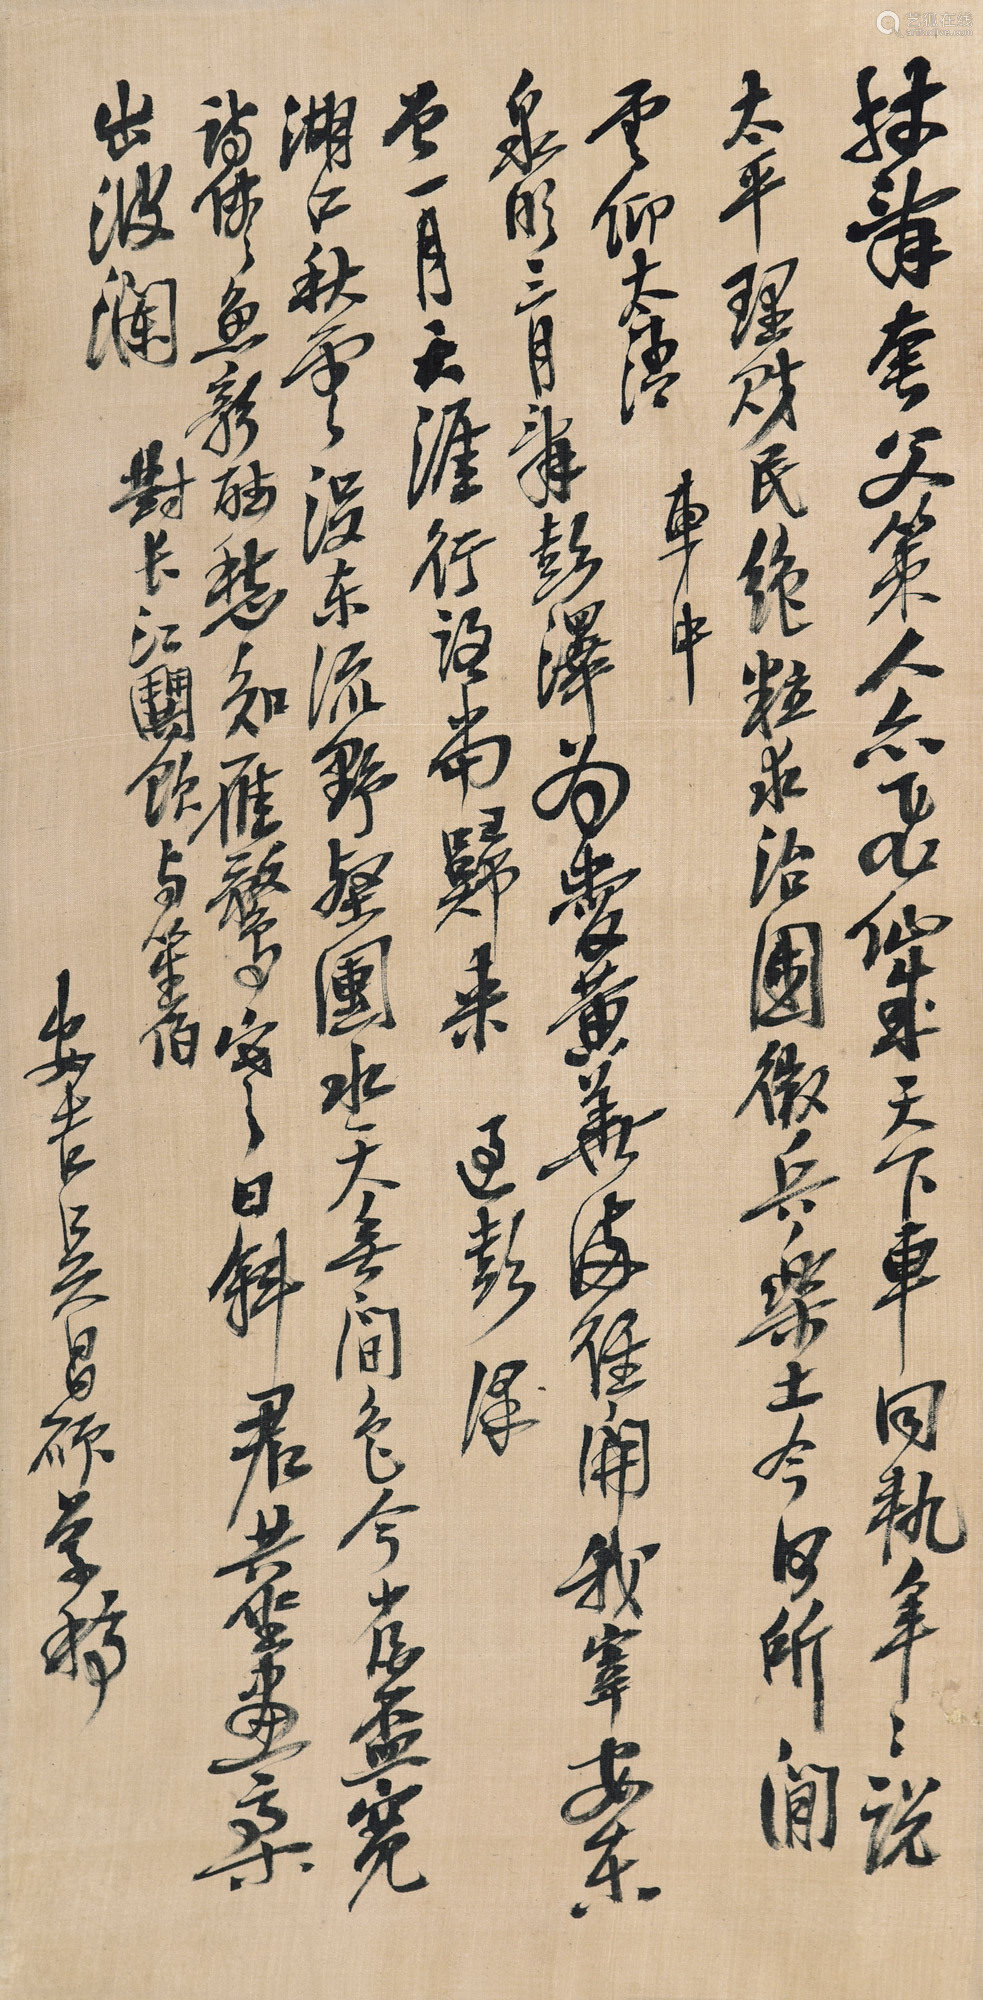 1844-1927 吴昌硕 行书诗稿 水墨绢本 镜片